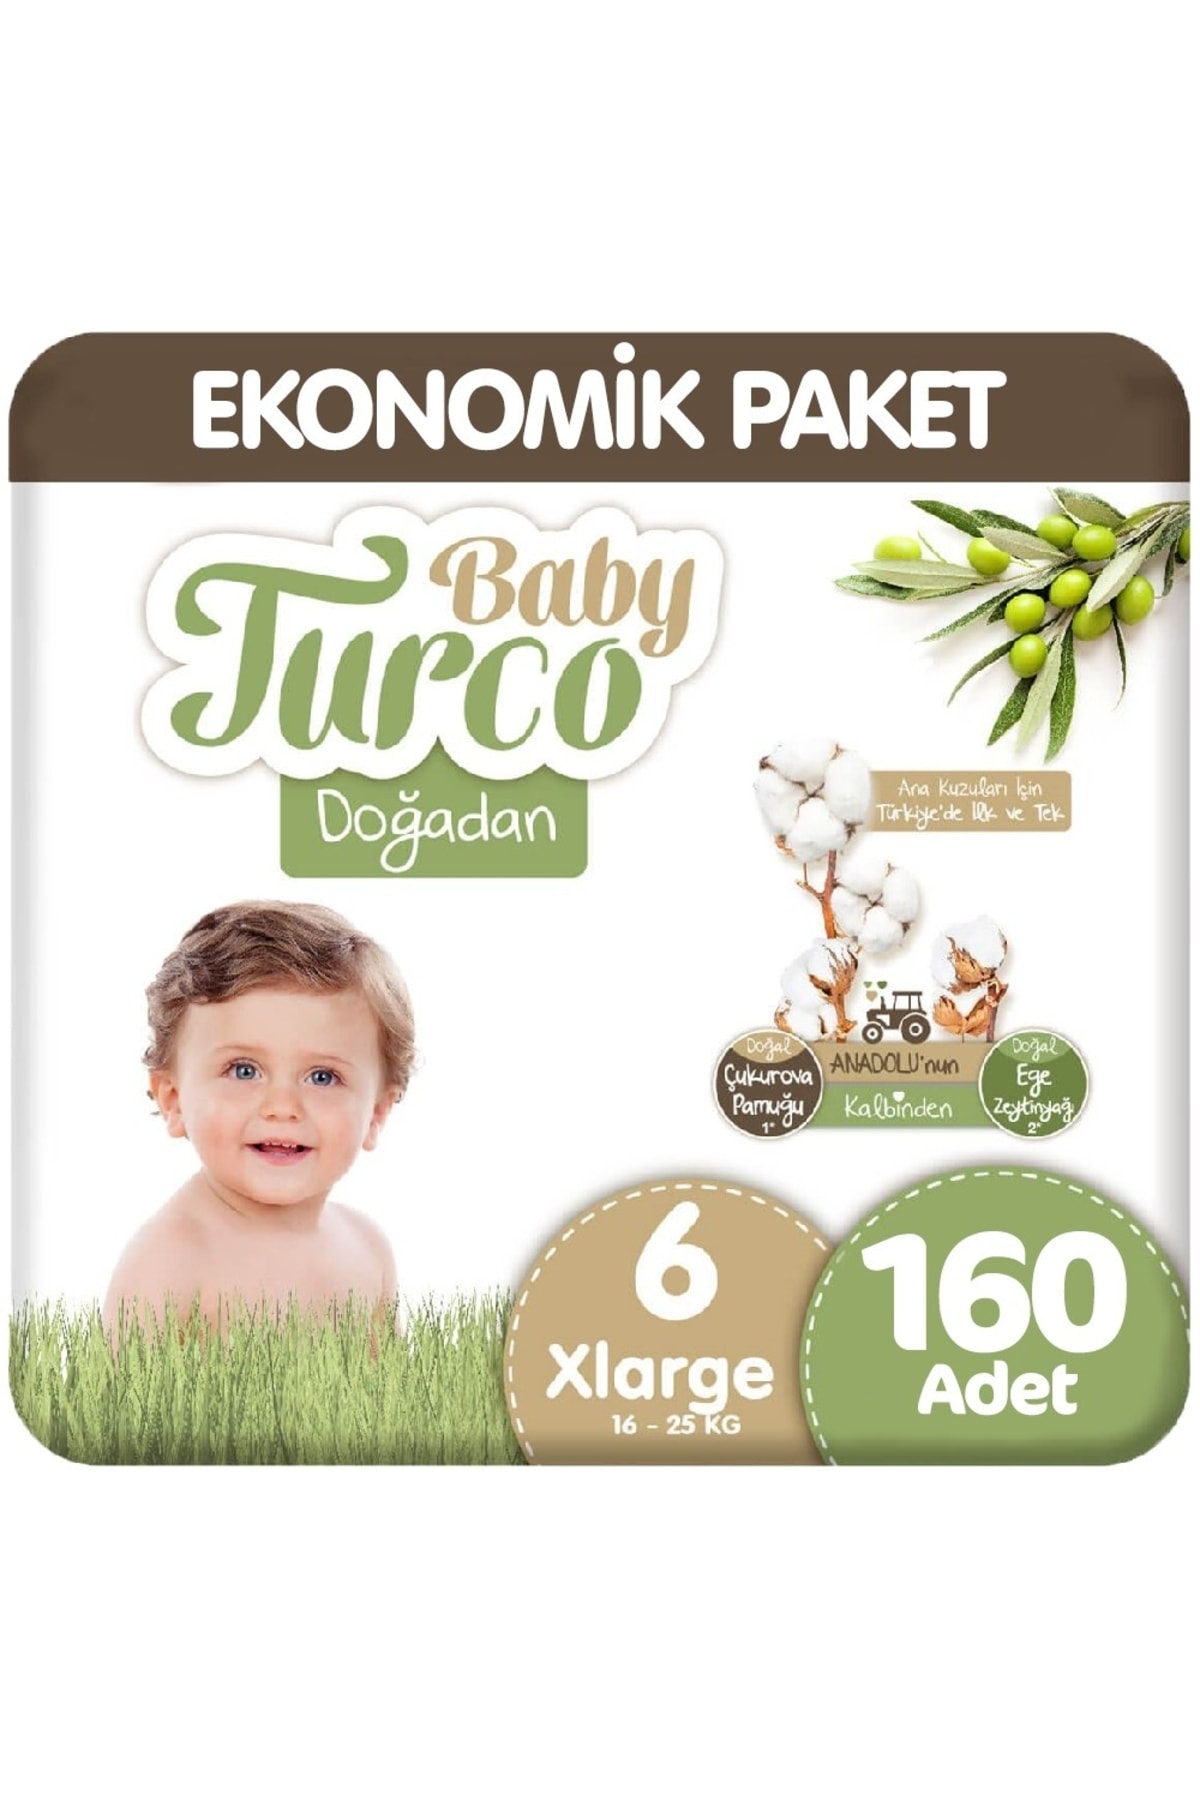 Baby Turco Doğadan 6 Beden Ekonomik 32x5 160 Adet